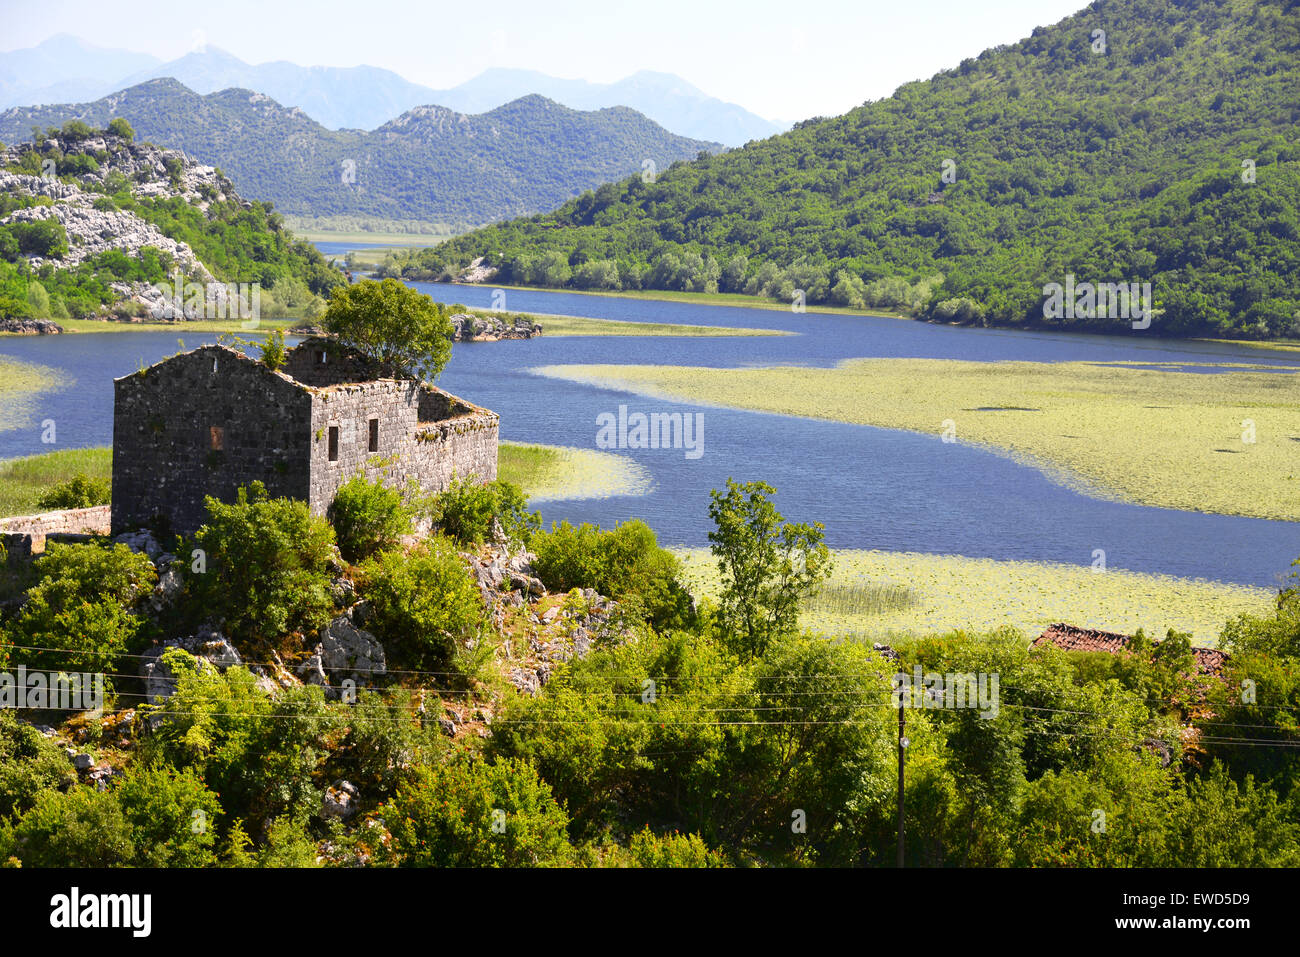 Karuc villaggio sul Lago di Scutari, Montenegro, il più grande lago della penisola balcanica. Parco nazionale. Foto Stock